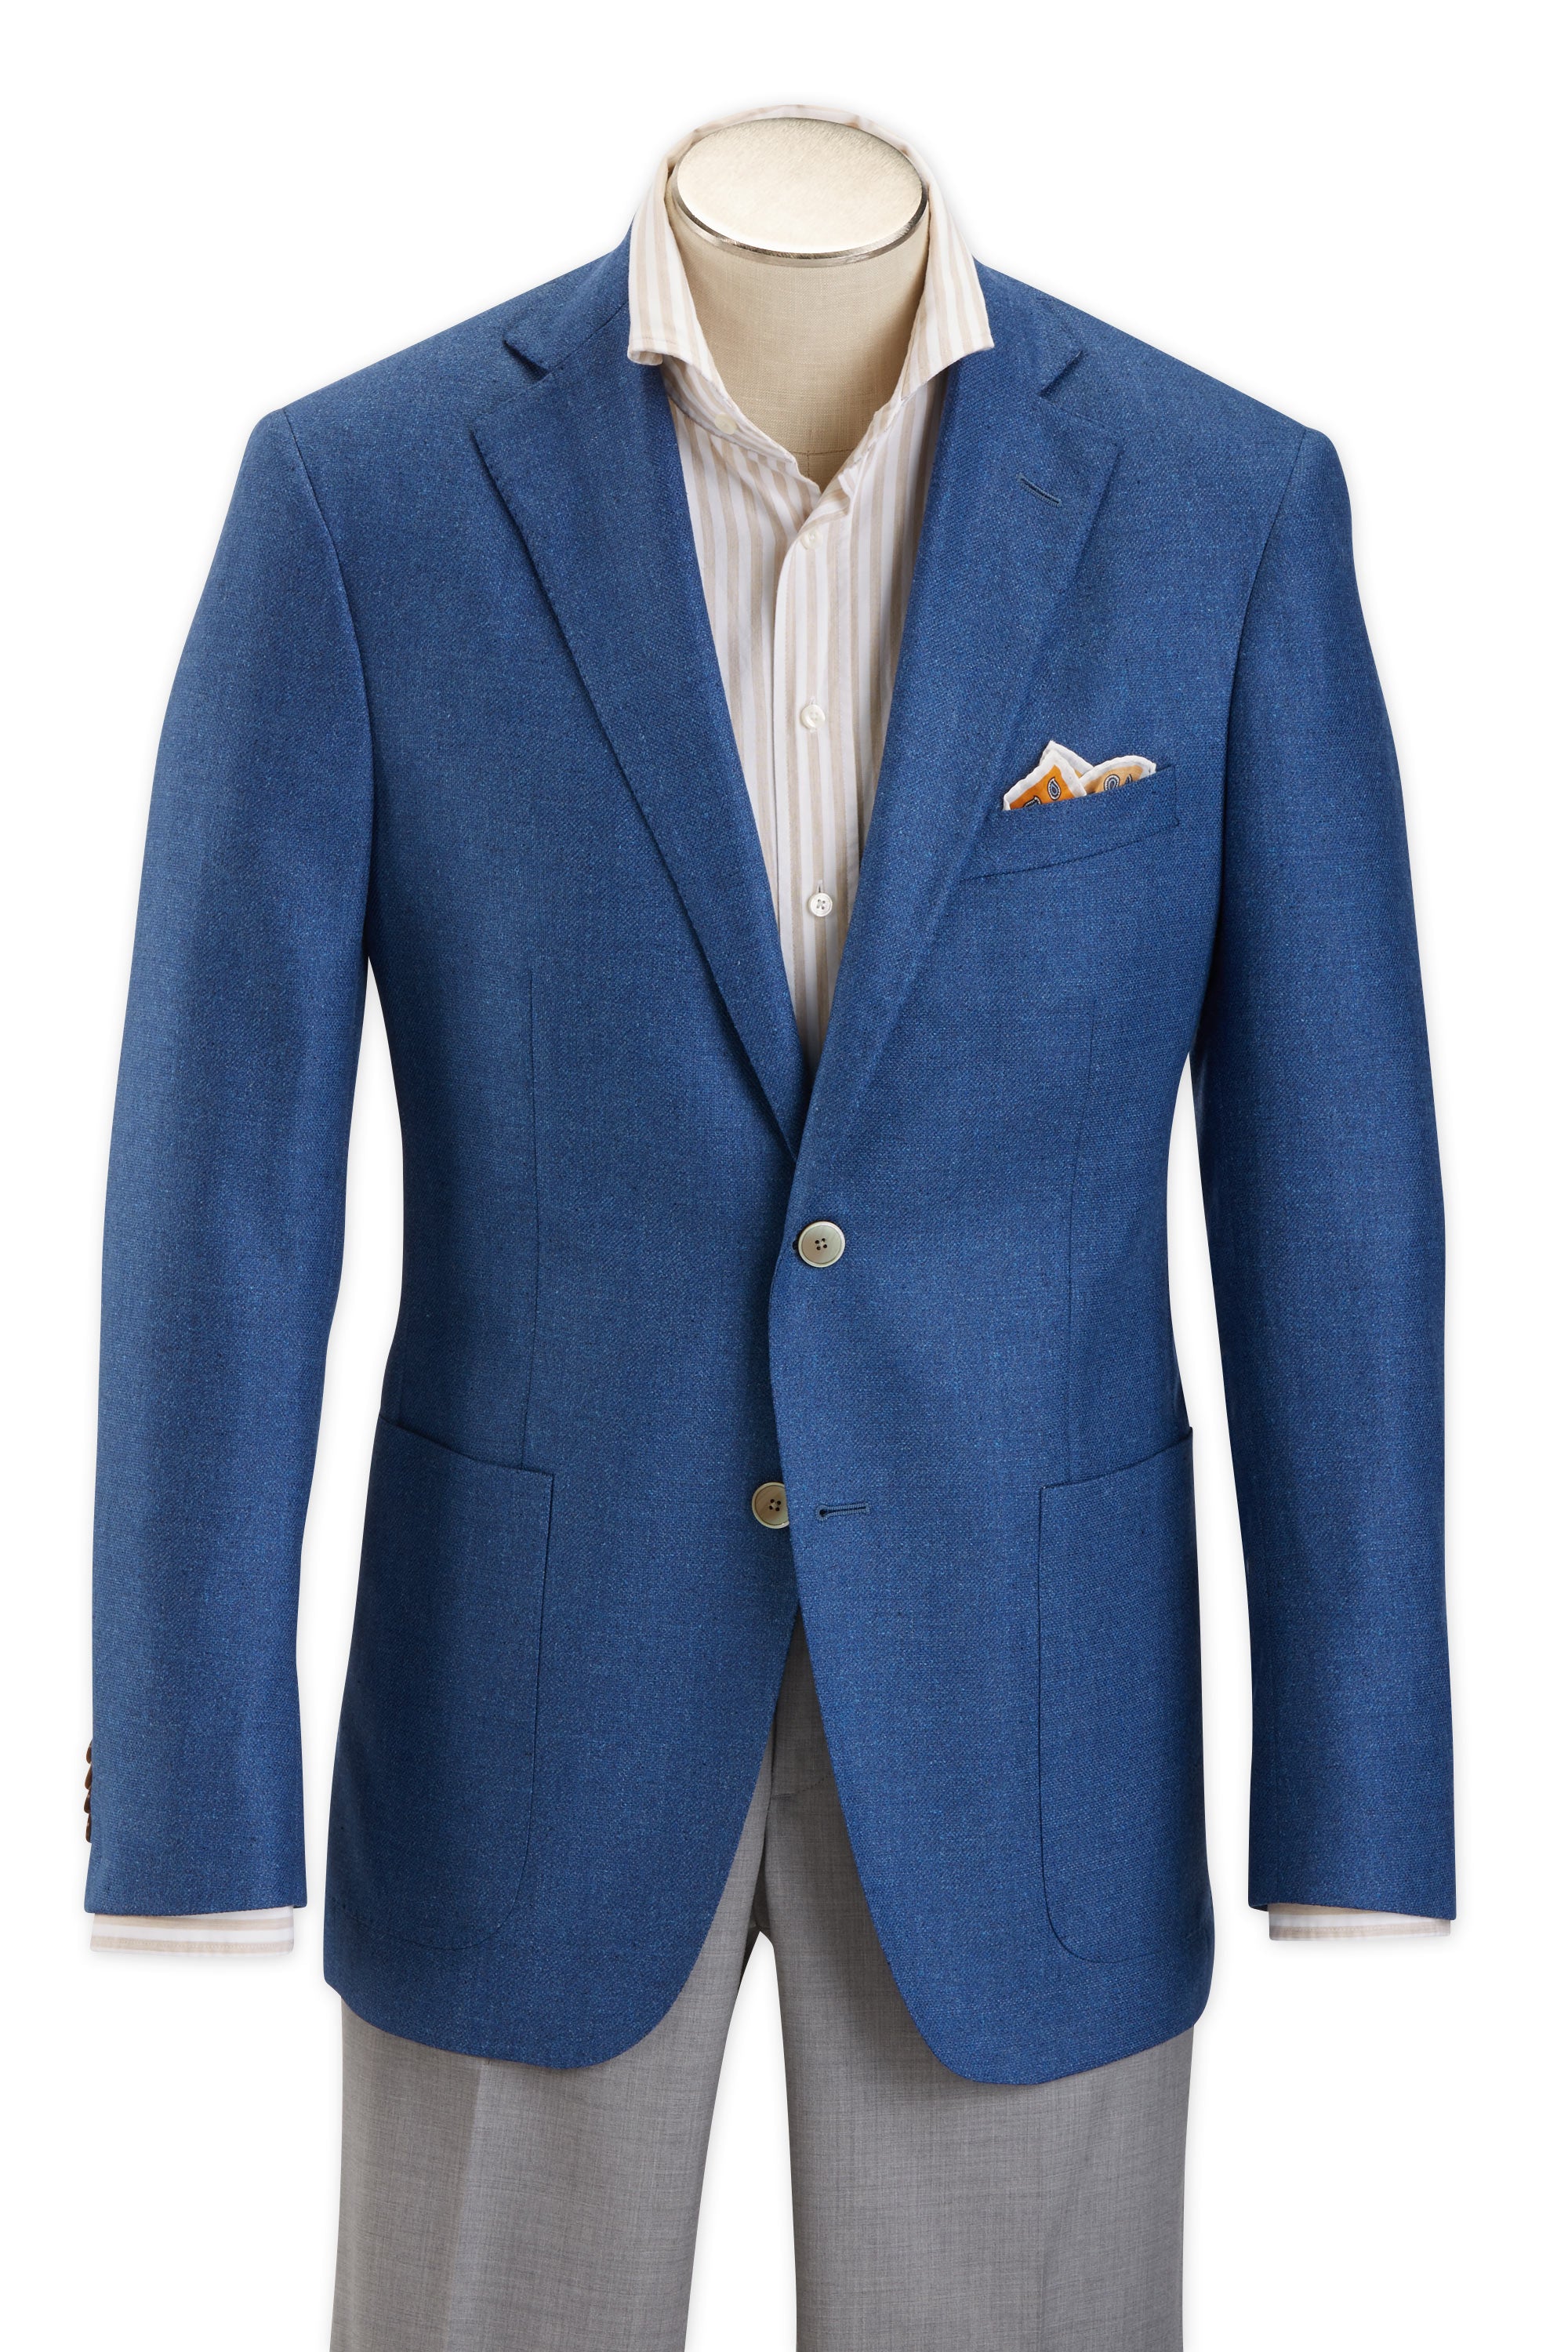 Men's Sport Coat Modern Cut - BLUE - 55% SILK/45% WOOL